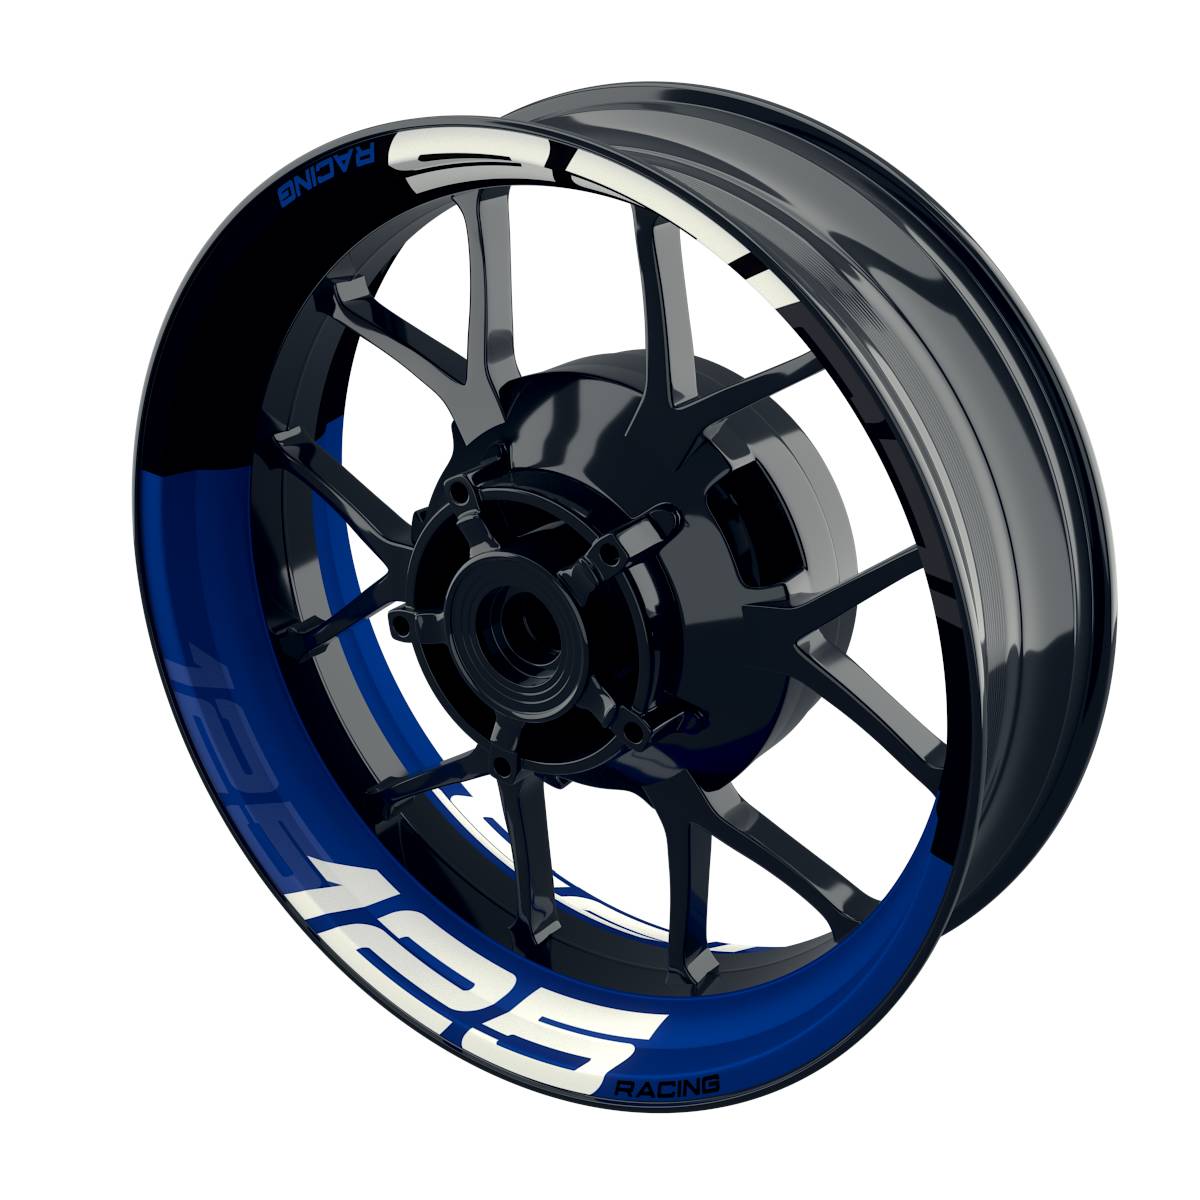 Rim Decals for KTM 125 RACING Rim Decals halb halb V2 Wheelsticker Premium